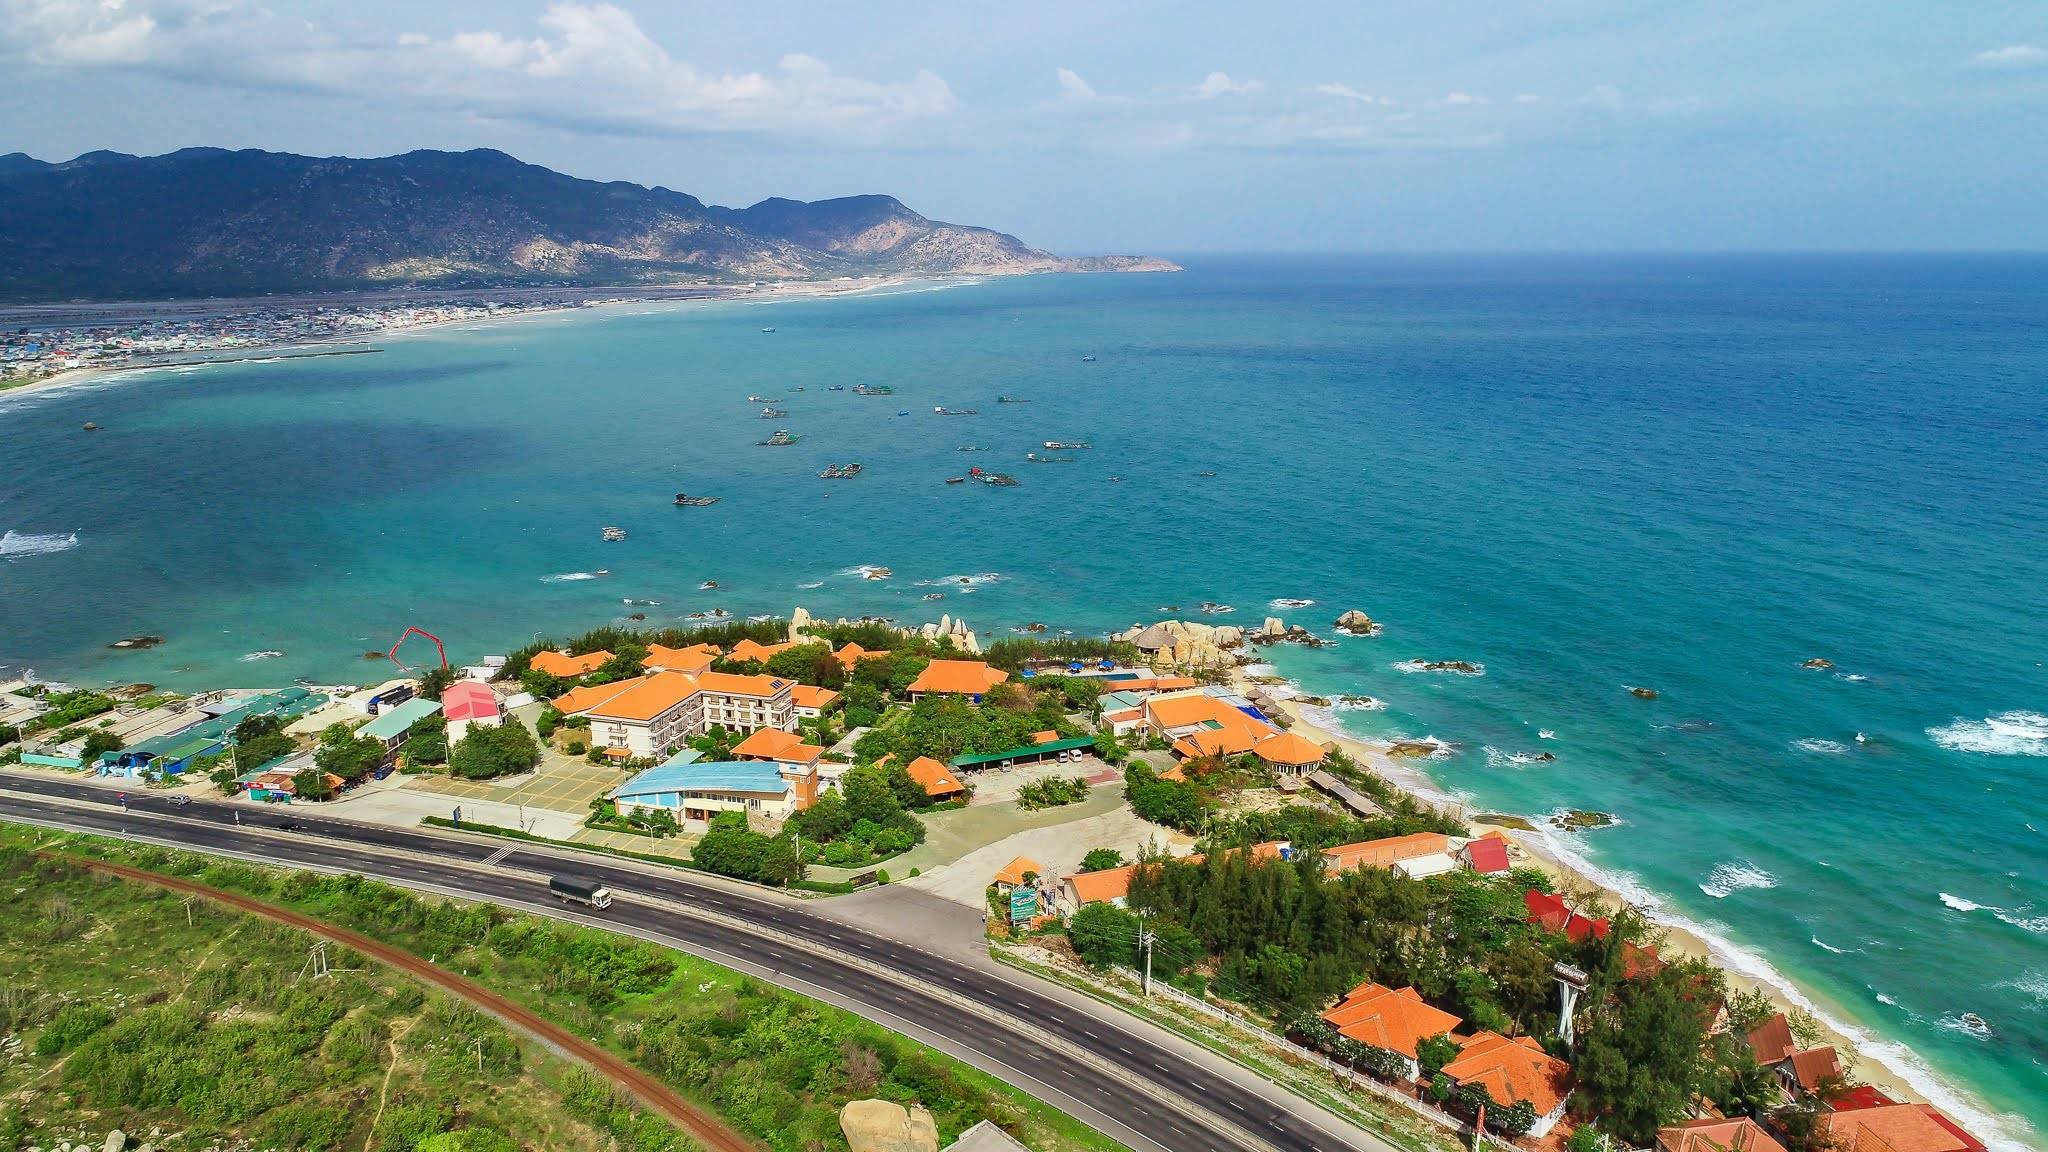 Вьетнамский курорт фантьет - стоит ли туда ехать отдыхать? экзотик